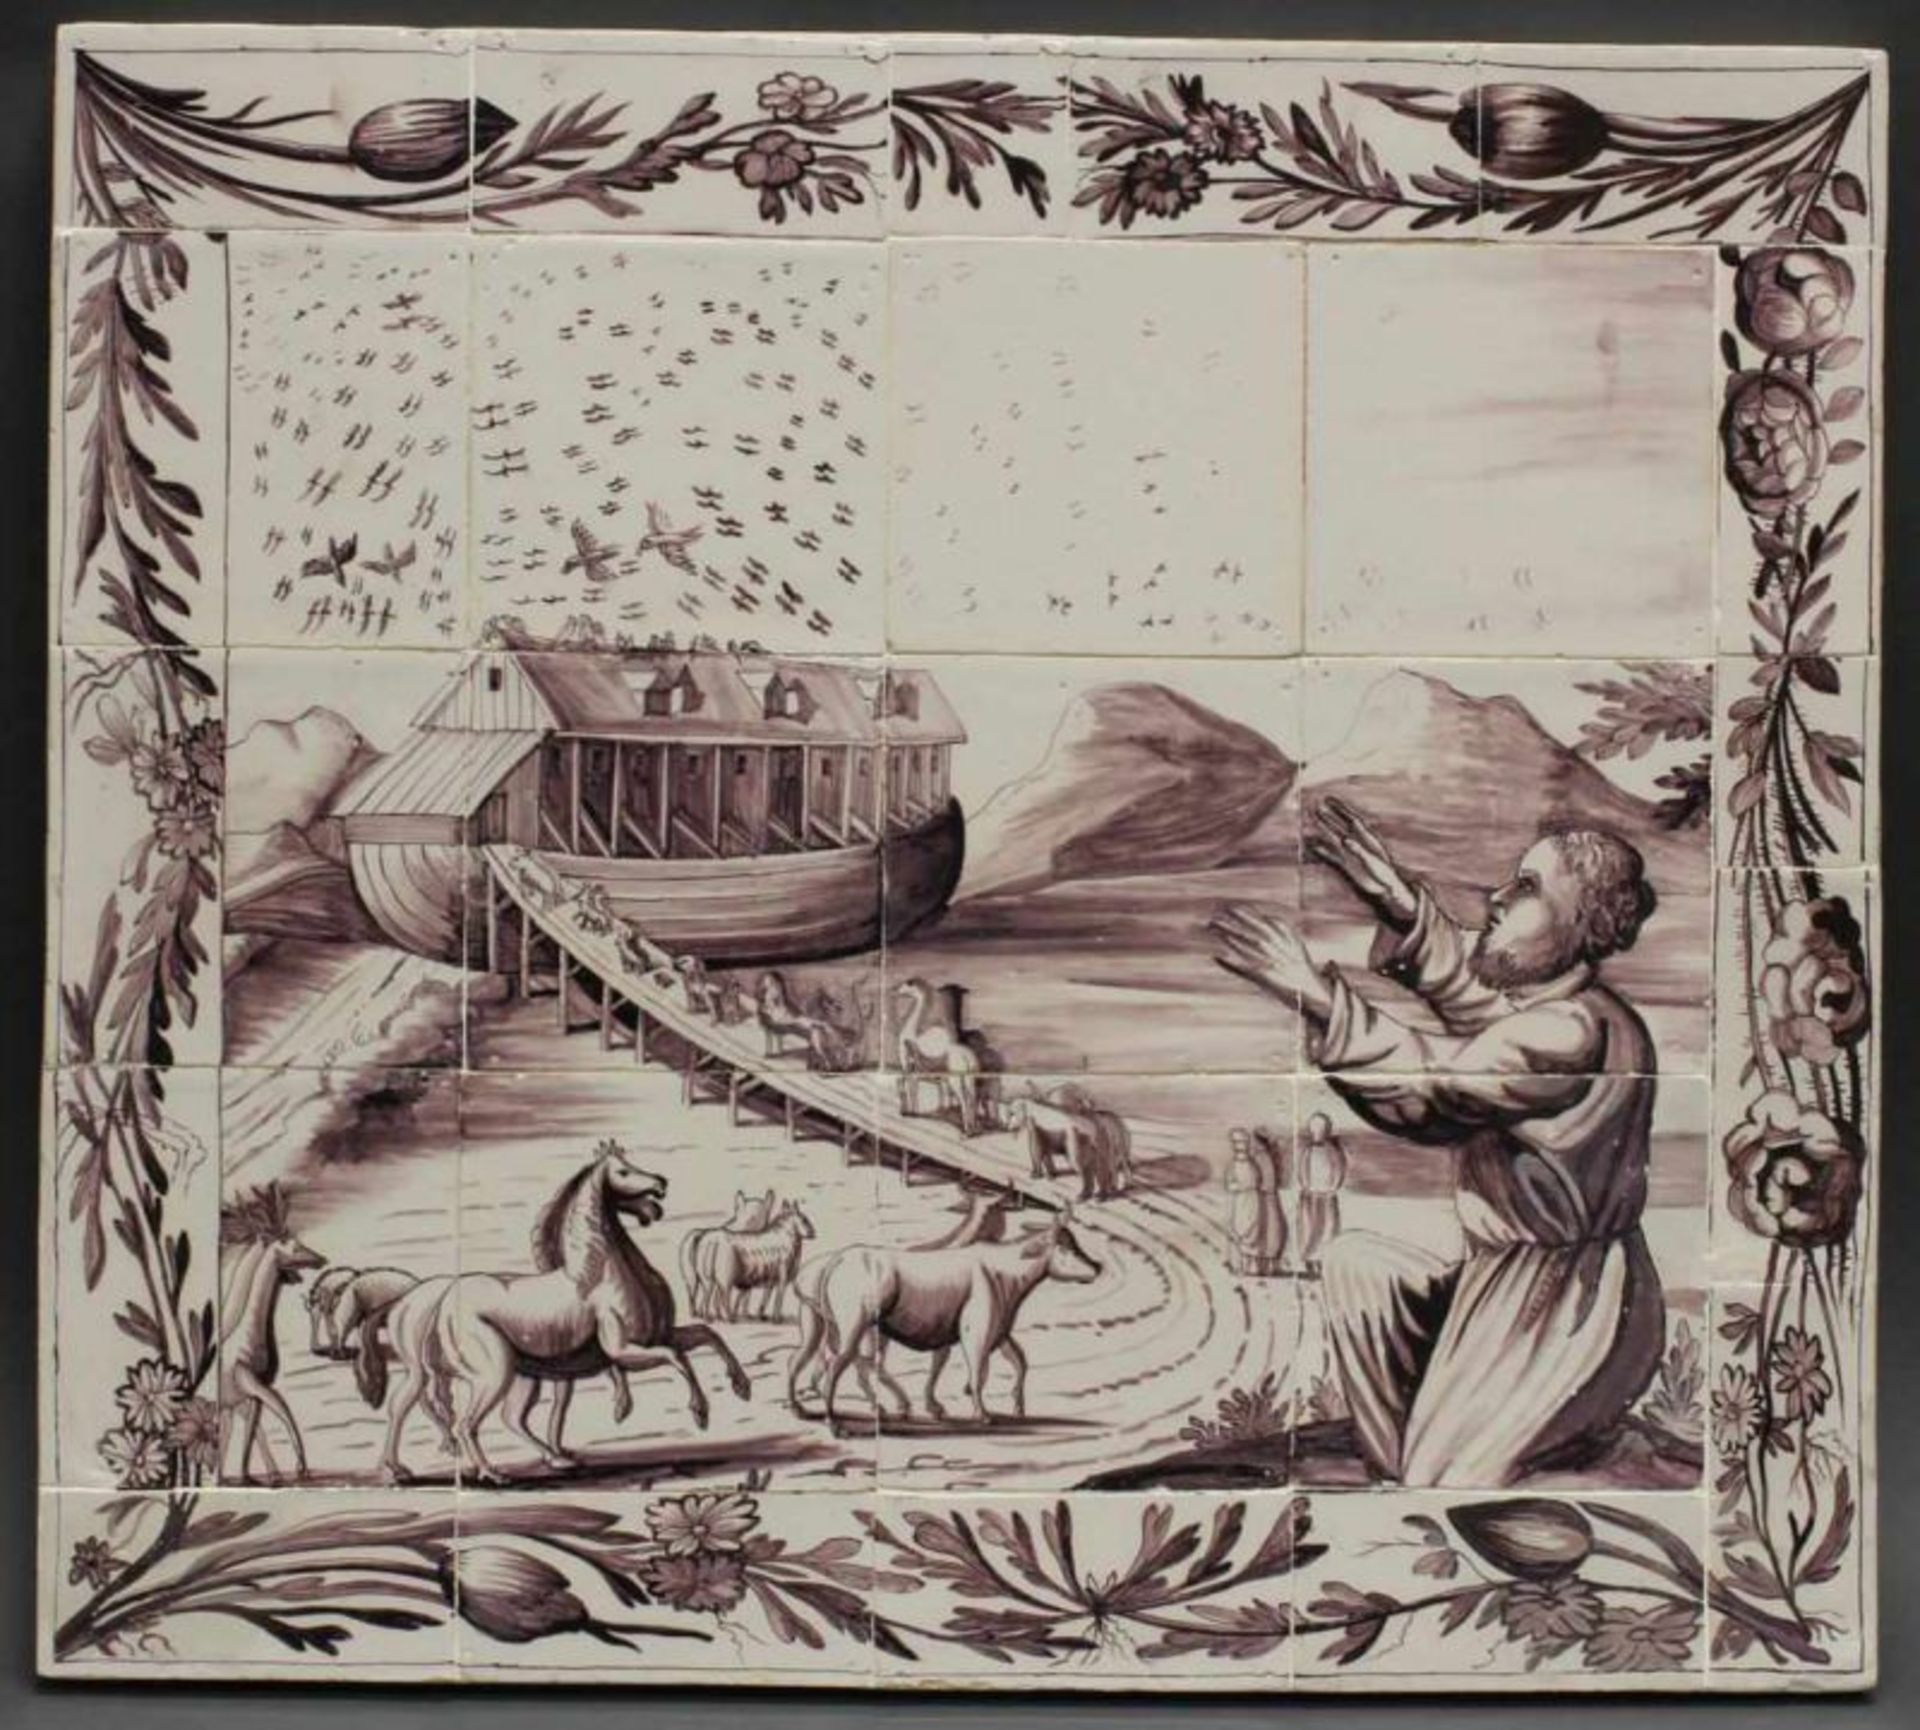 Fliesenbild, "Die Arche Noah", Keramik, Delft, 18. Jh., 12 Bildfliesen sowie weitere Randfliesen,